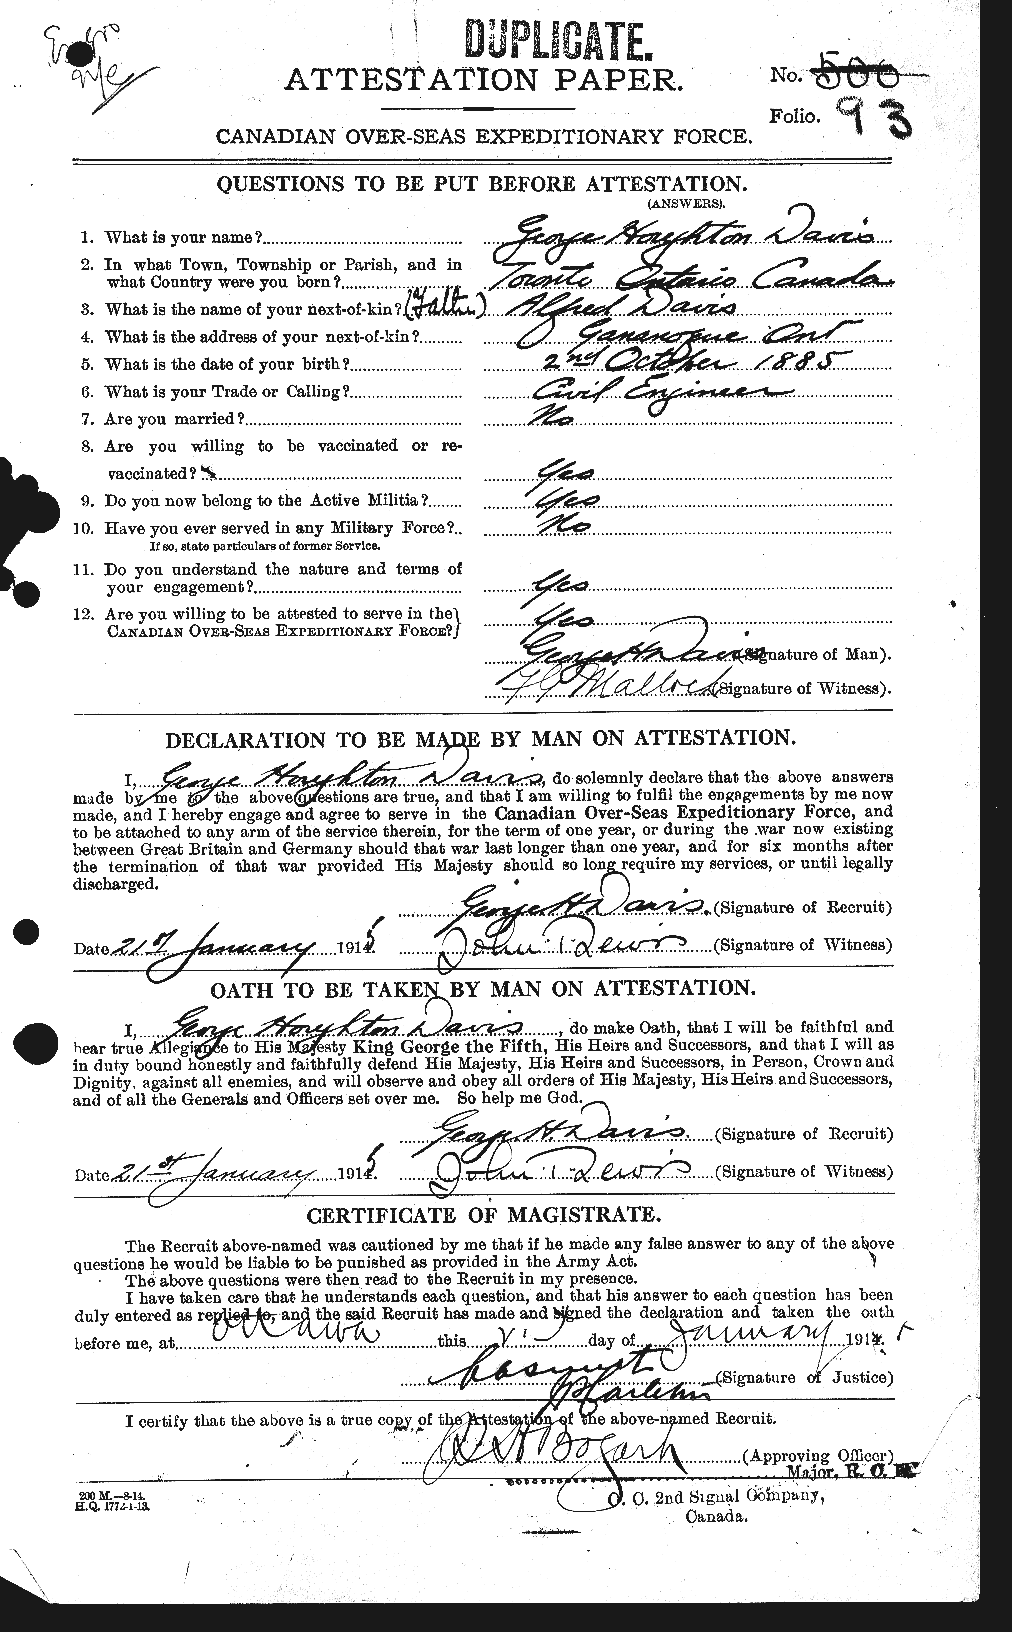 Dossiers du Personnel de la Première Guerre mondiale - CEC 282008a